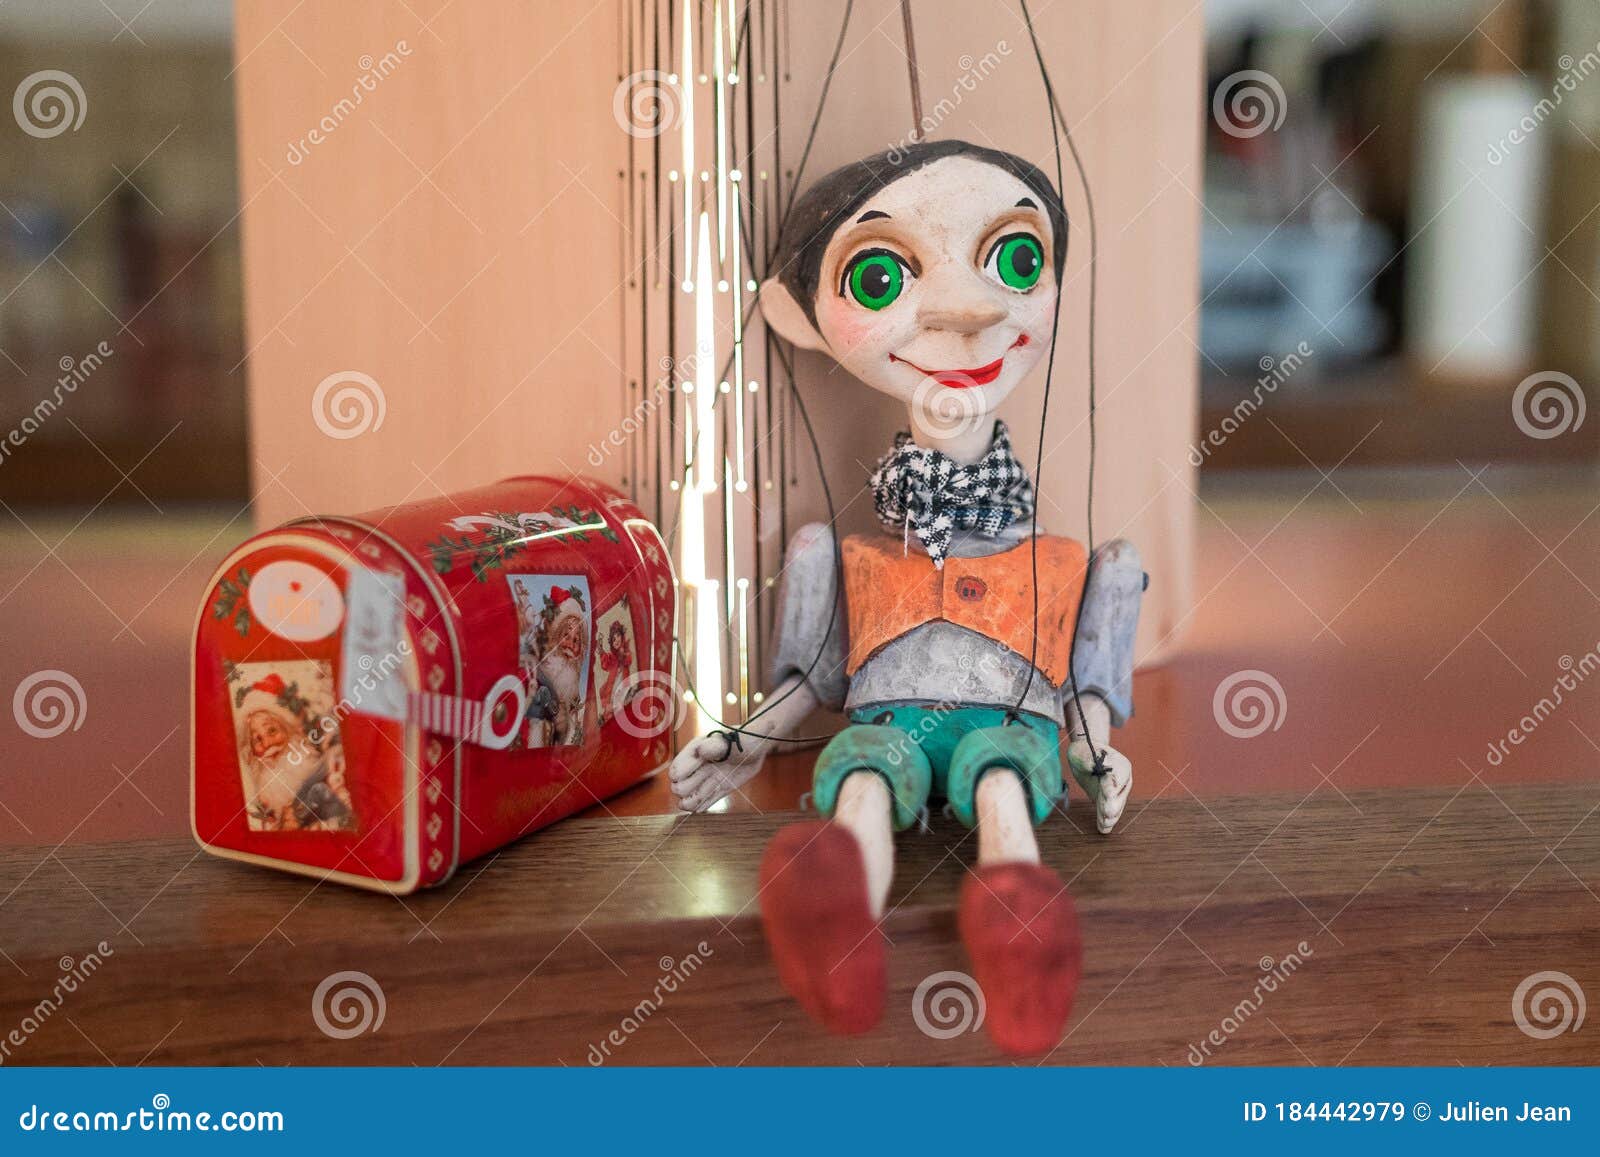 Moskee Kinderen Aantrekkelijk zijn aantrekkelijk Poppenkast Marionette Uit Praag Uit Tsjechië Stock Afbeelding - Image of  mooi, viering: 184442979